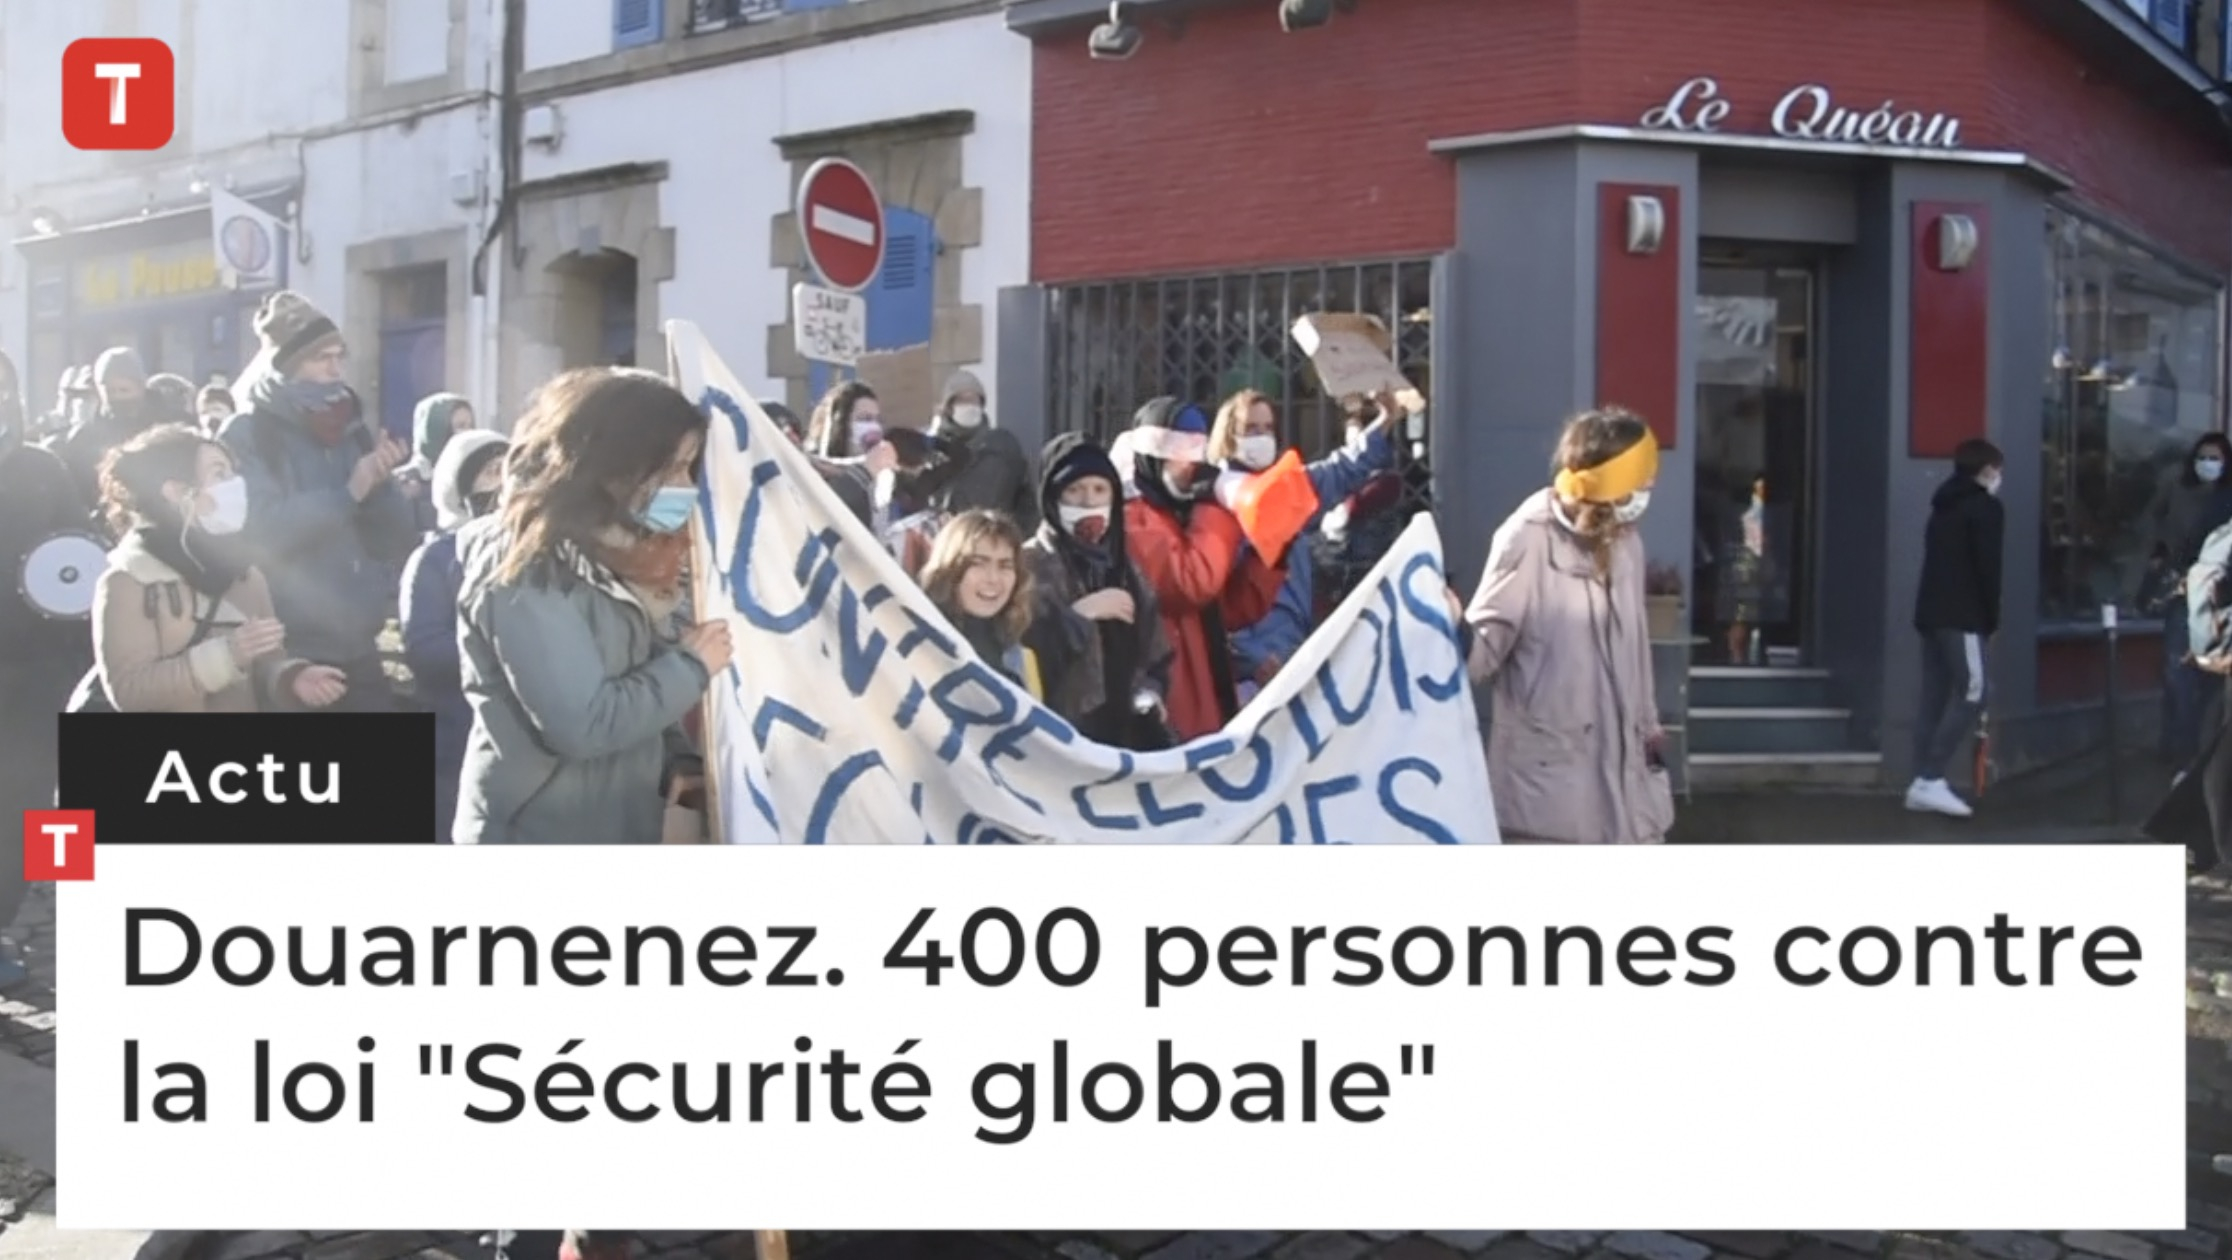 Douarnenez. 400 personnes contre la loi "Sécurité globale" (Le Télégramme)